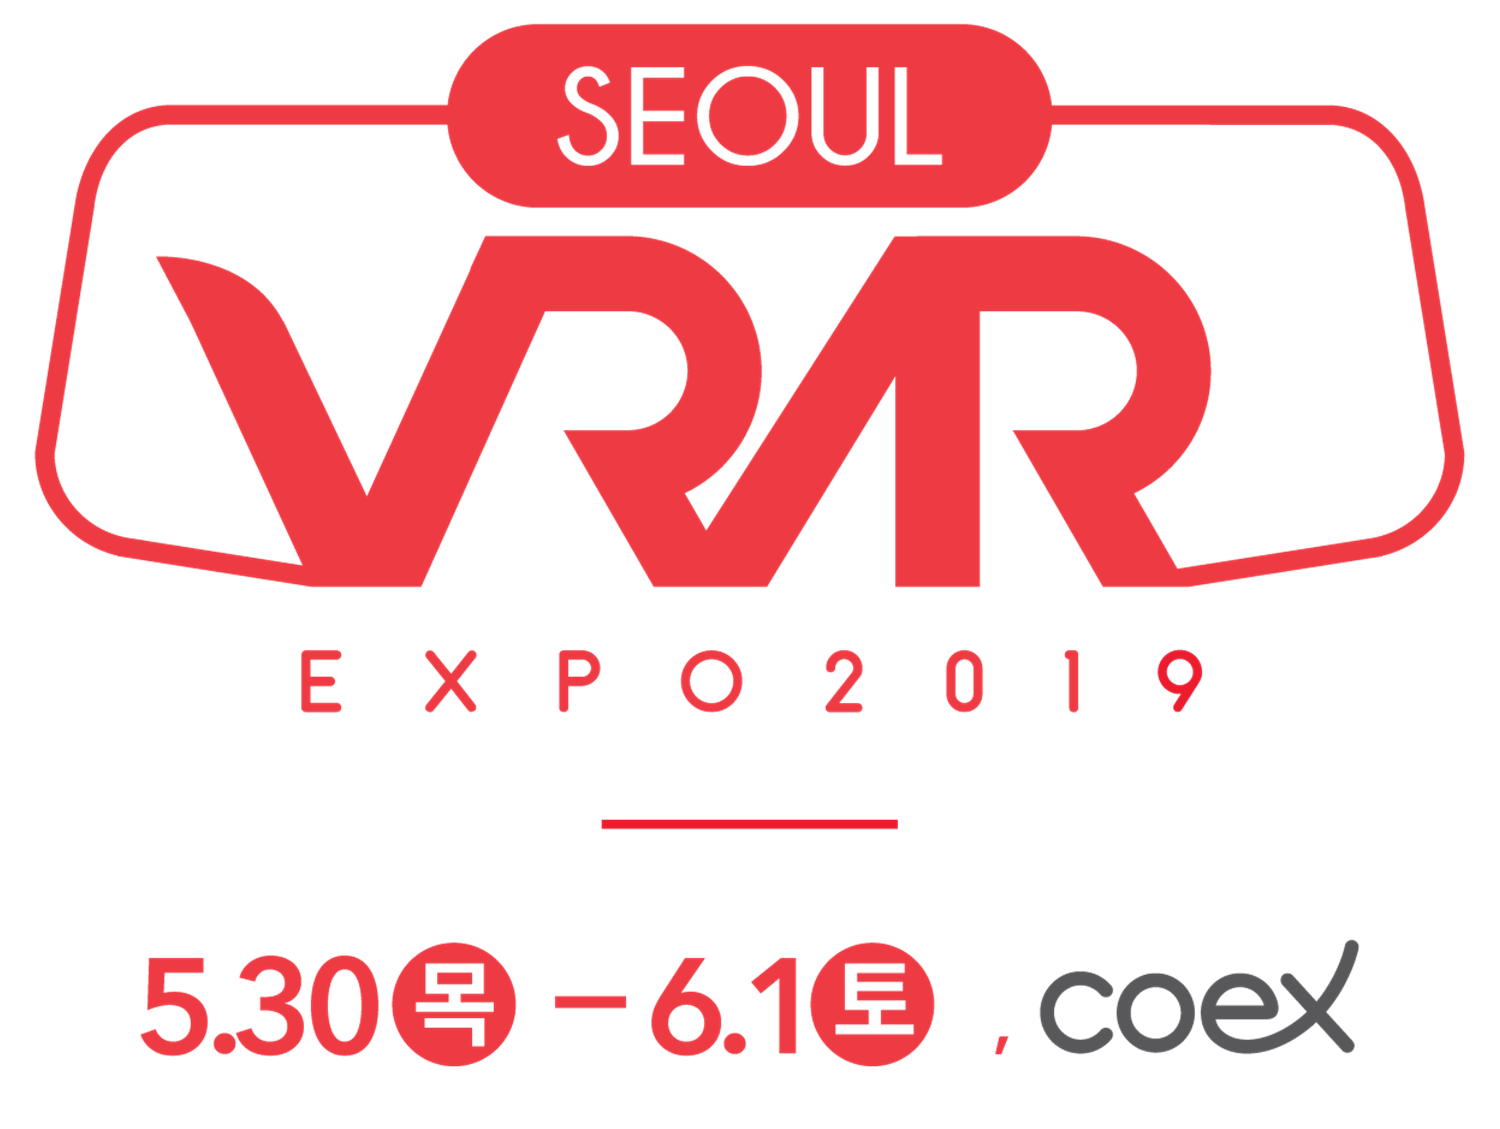 SEOUL VR AR EXPO 2019